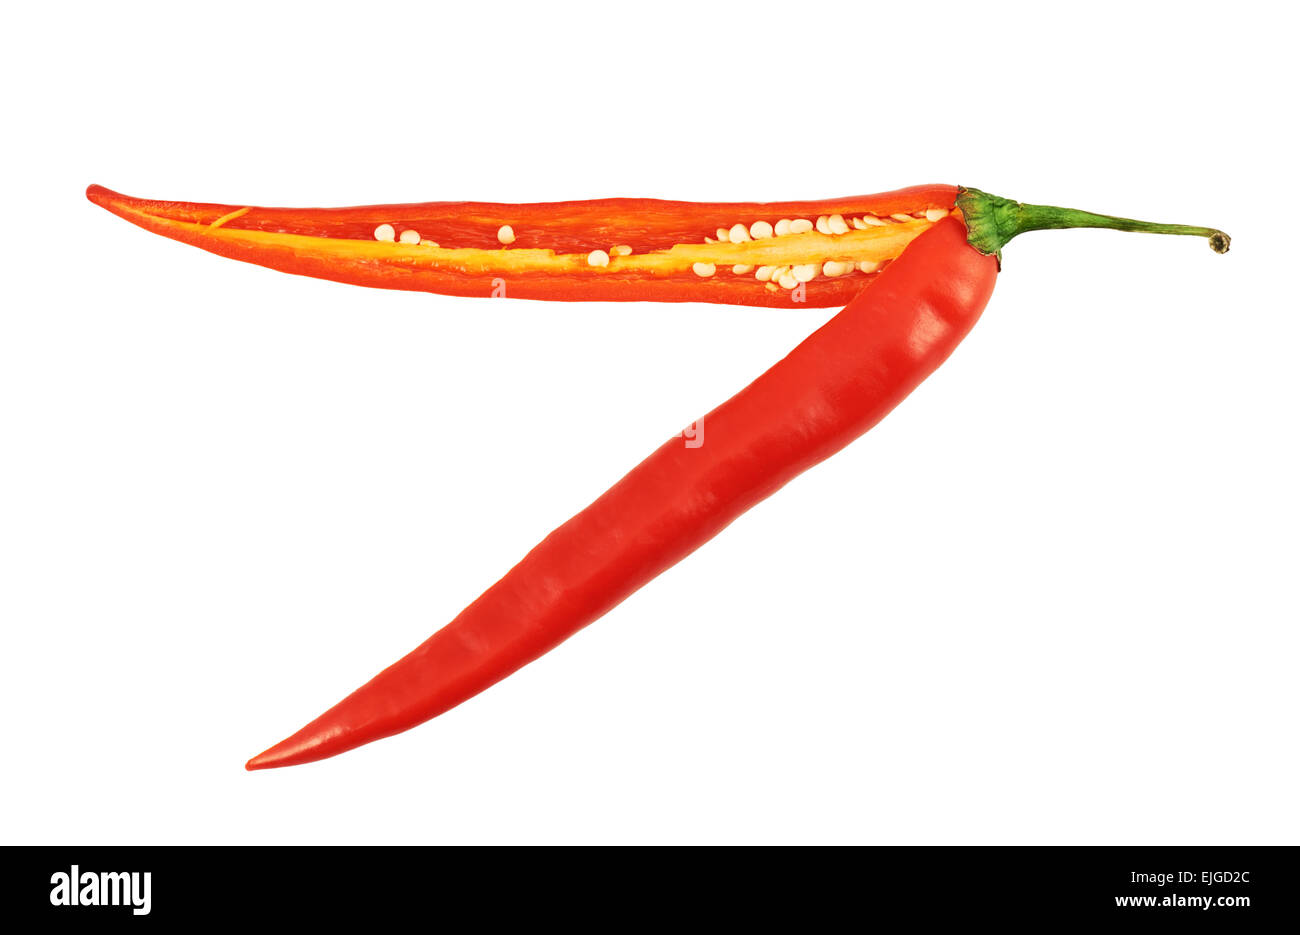 https://c8.alamy.com/comp/EJGD2C/cut-in-halves-chili-pepper-isolated-EJGD2C.jpg